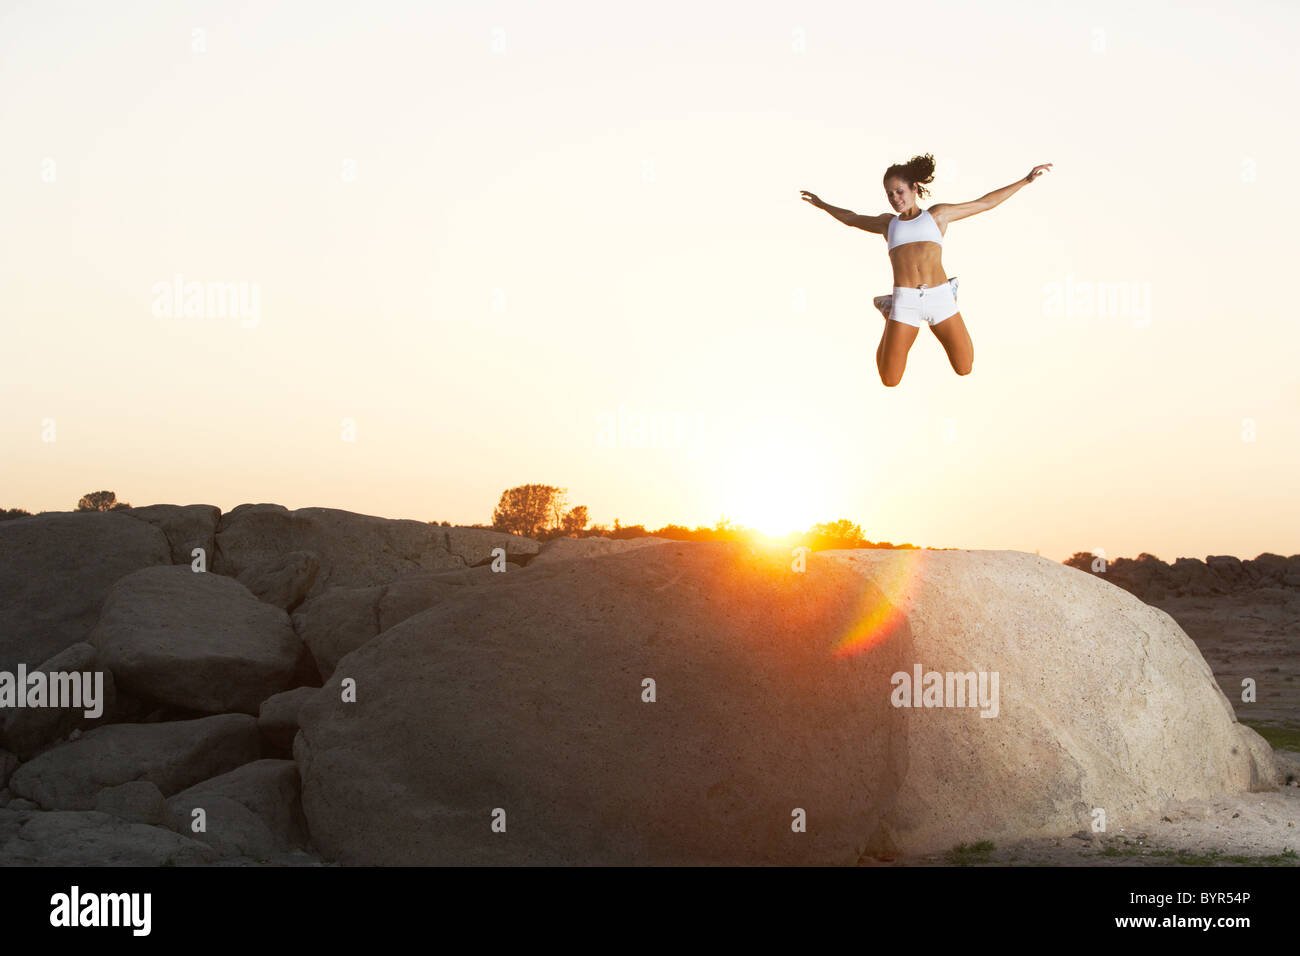 Une femme saute de joie sur à d'un rocher surplombant un lac Banque D'Images